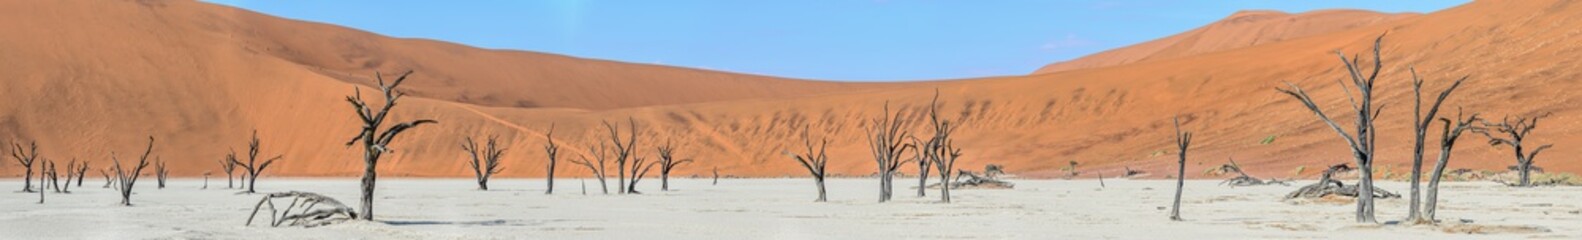 Sossusvlei (Dead Vlei), Namibia.